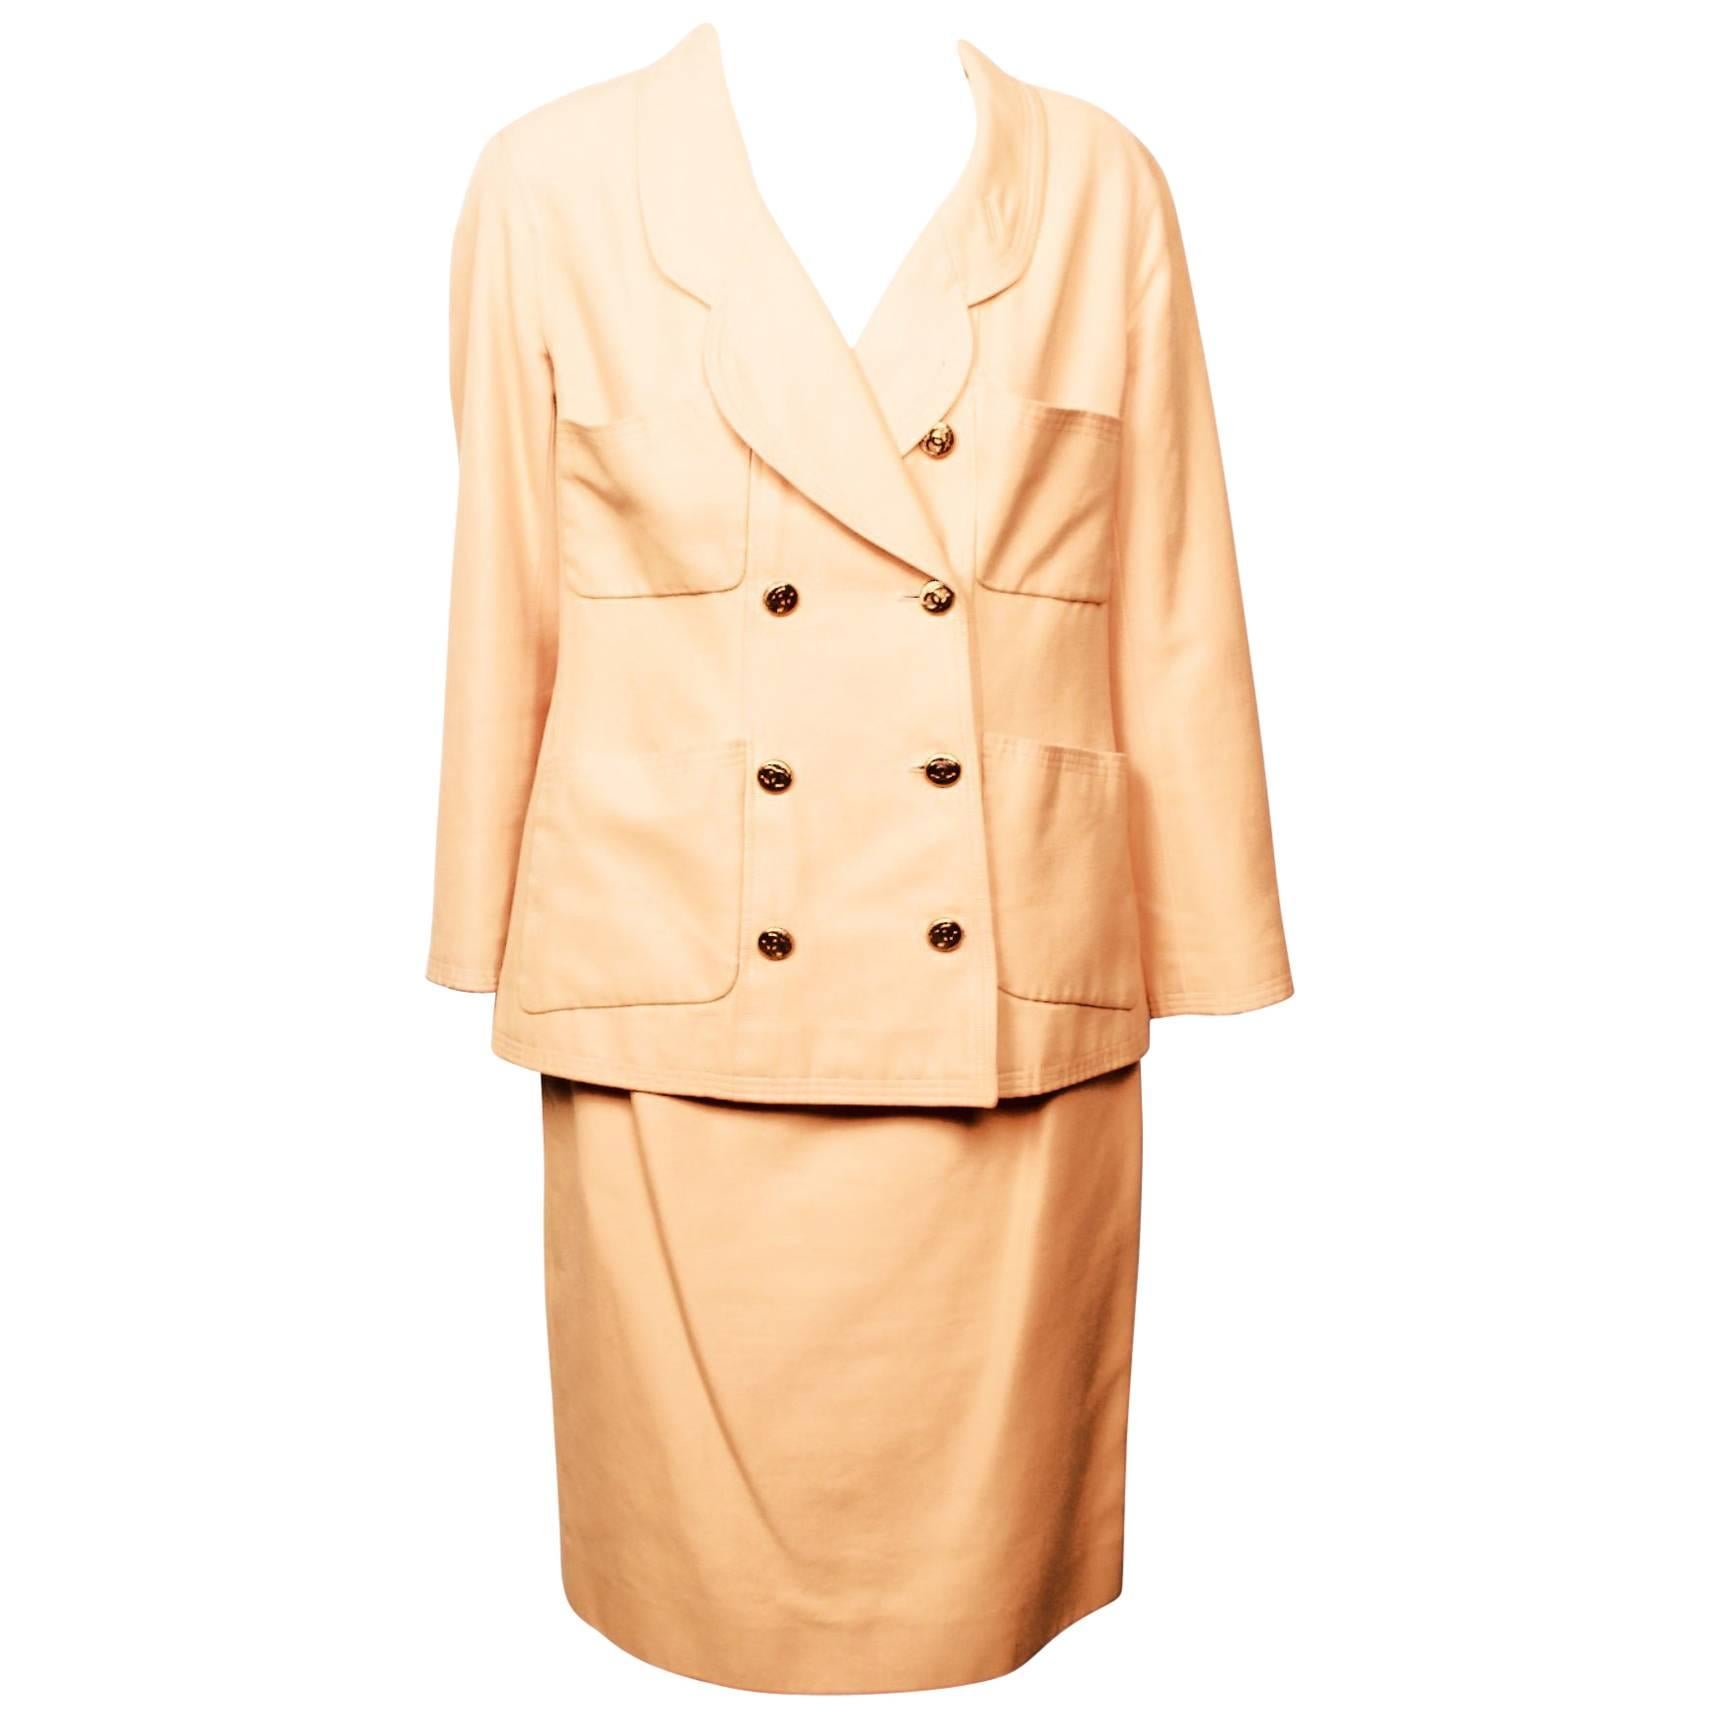 1990's Chanel Boutique Apricot Skirt and Jacket Suit Ensemble